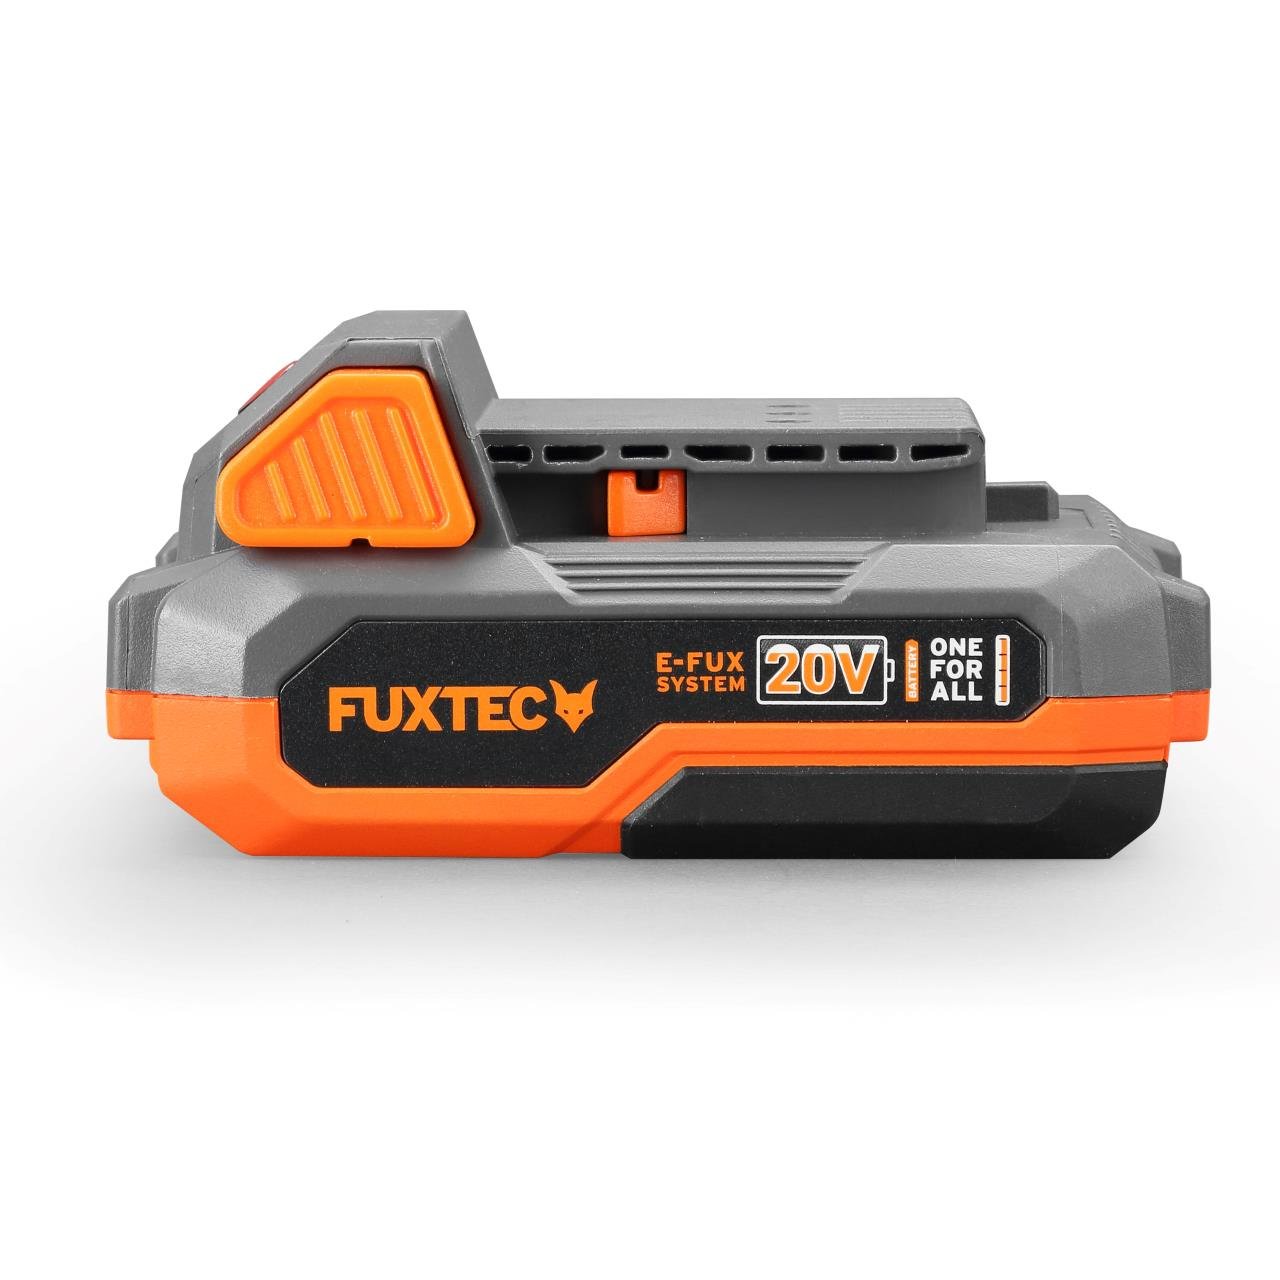 Scie sabre sans fil 20V FUXTEC FX-E1SS20 - set avec batterie 2Ah et chargeur 2,4A